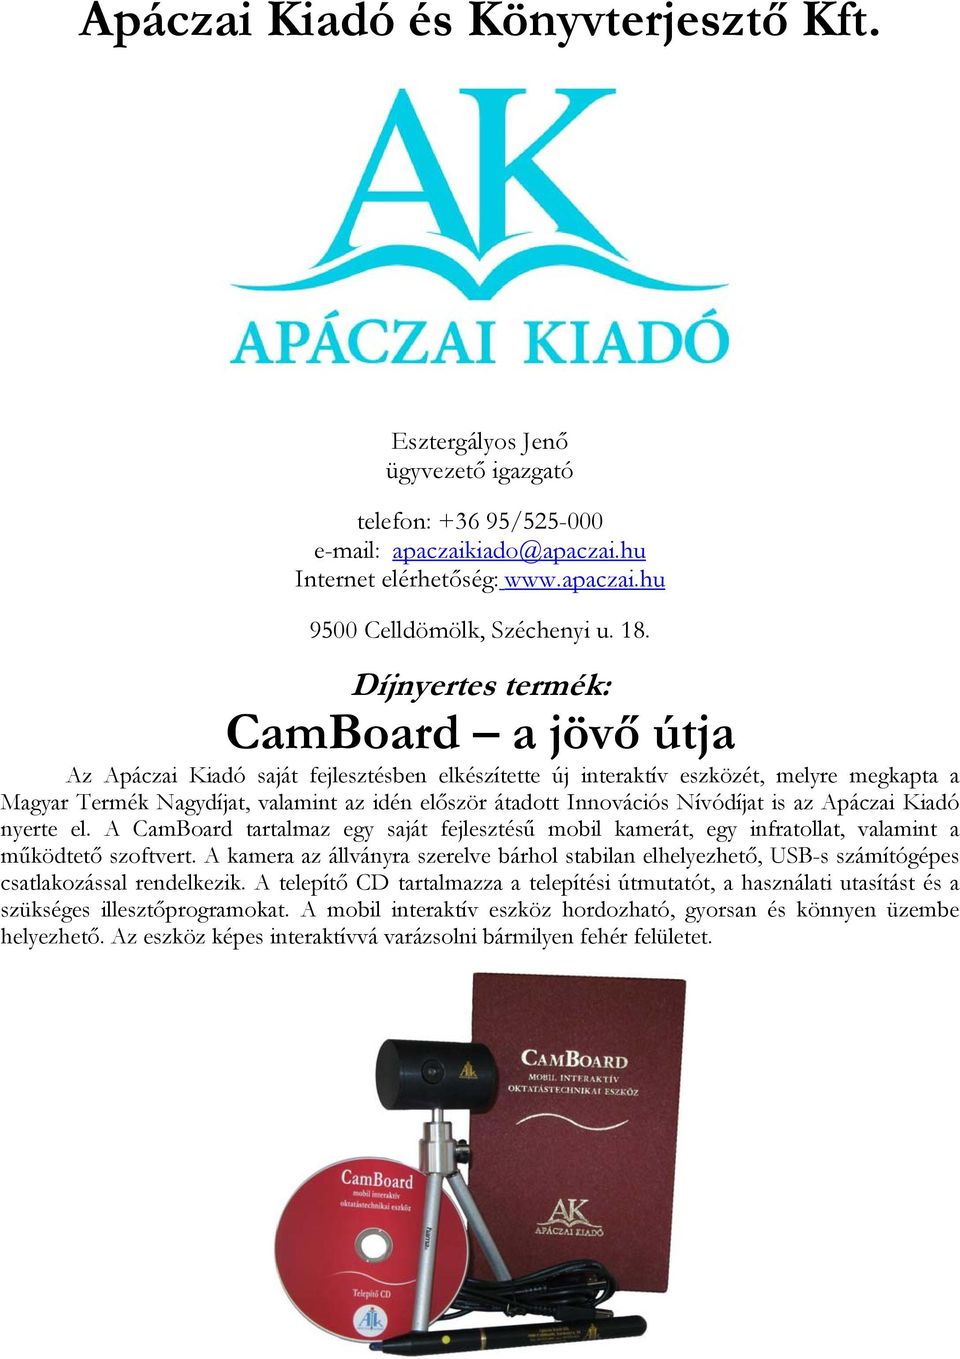 Innovációs Nívódíjat is az Apáczai Kiadó nyerte el. A CamBoard tartalmaz egy saját fejlesztésű mobil kamerát, egy infratollat, valamint a működtető szoftvert.